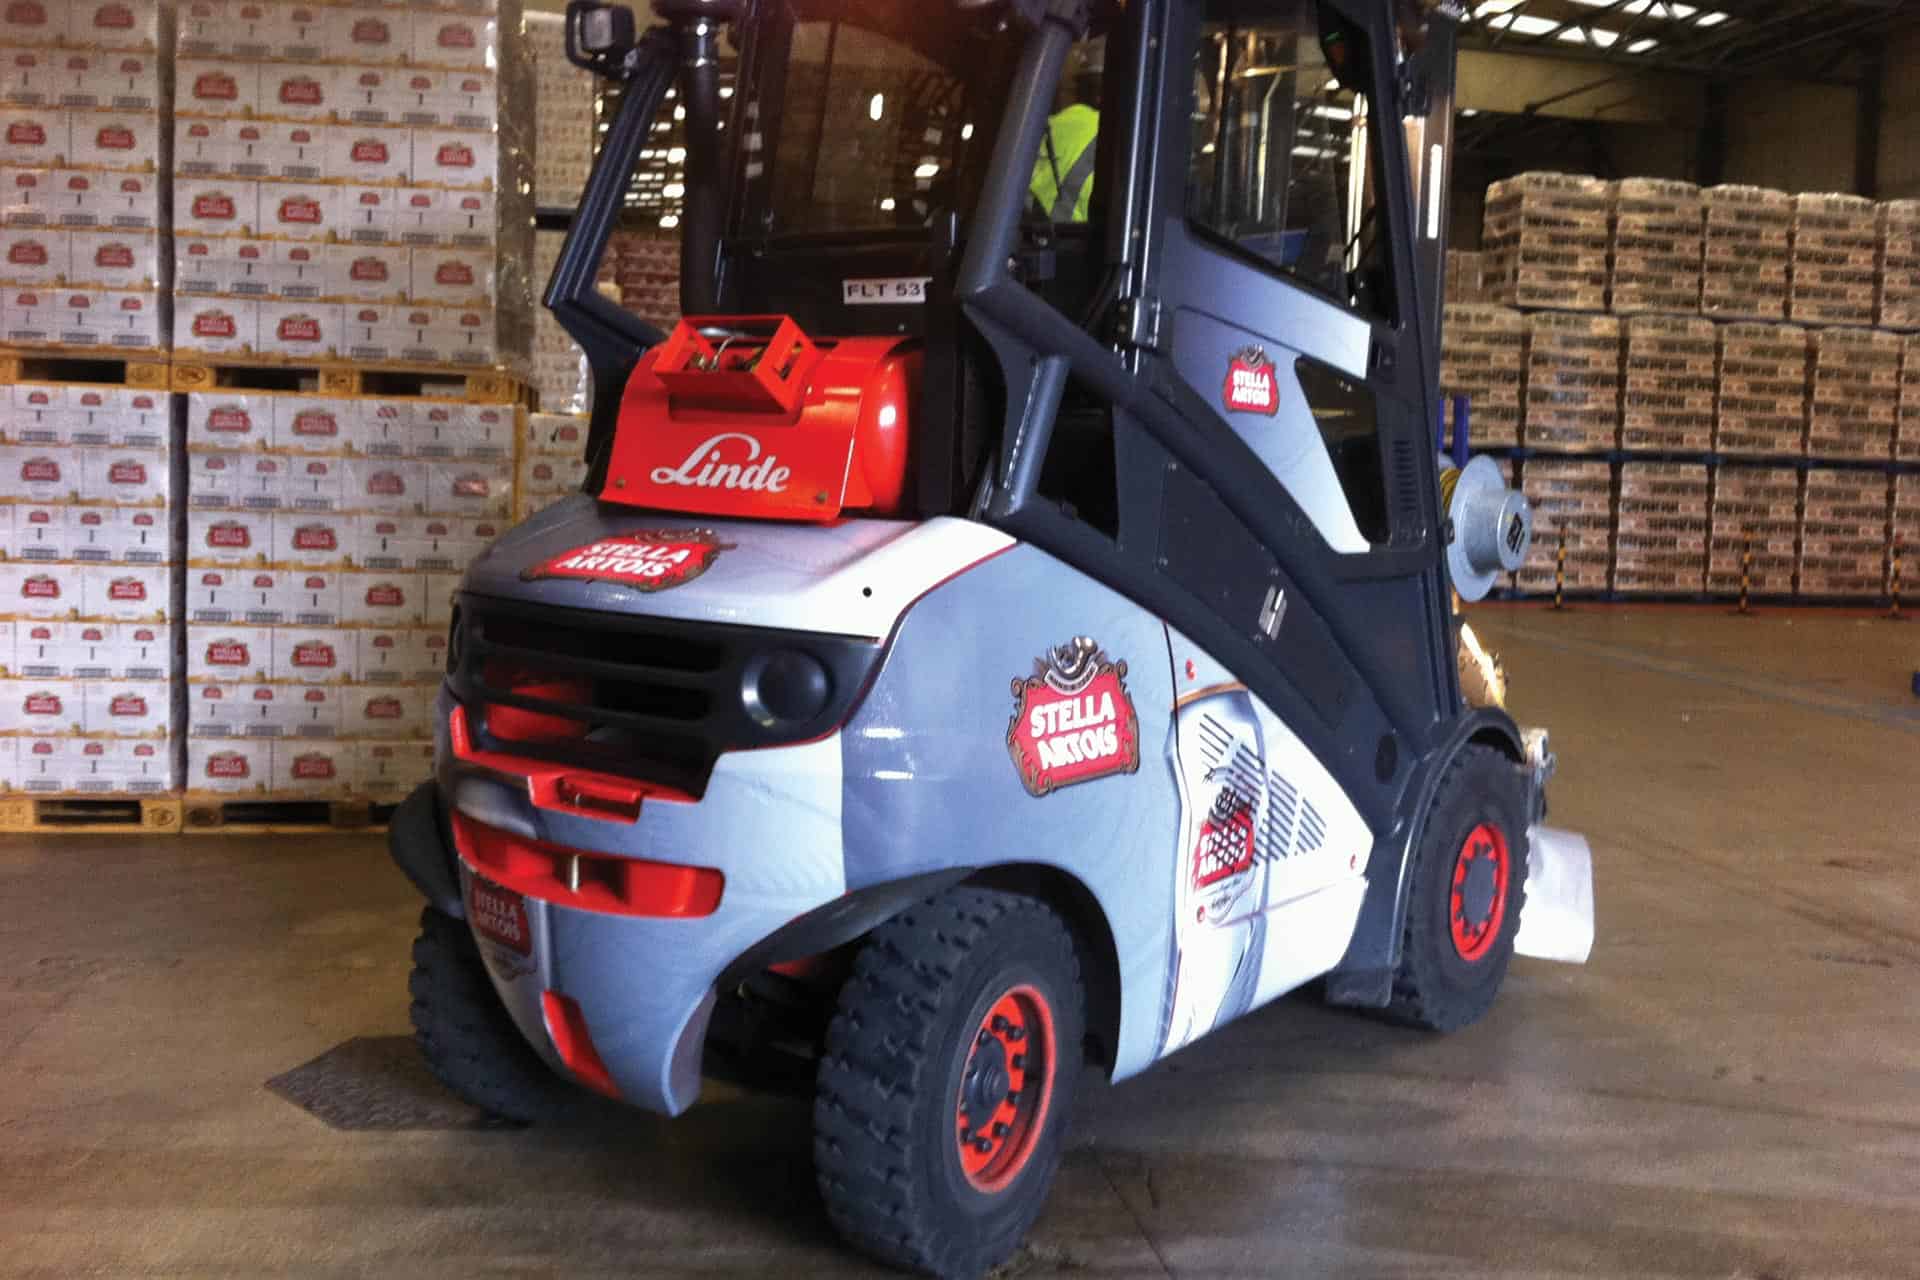 Inbev Forklift Truck - stella artois wrap